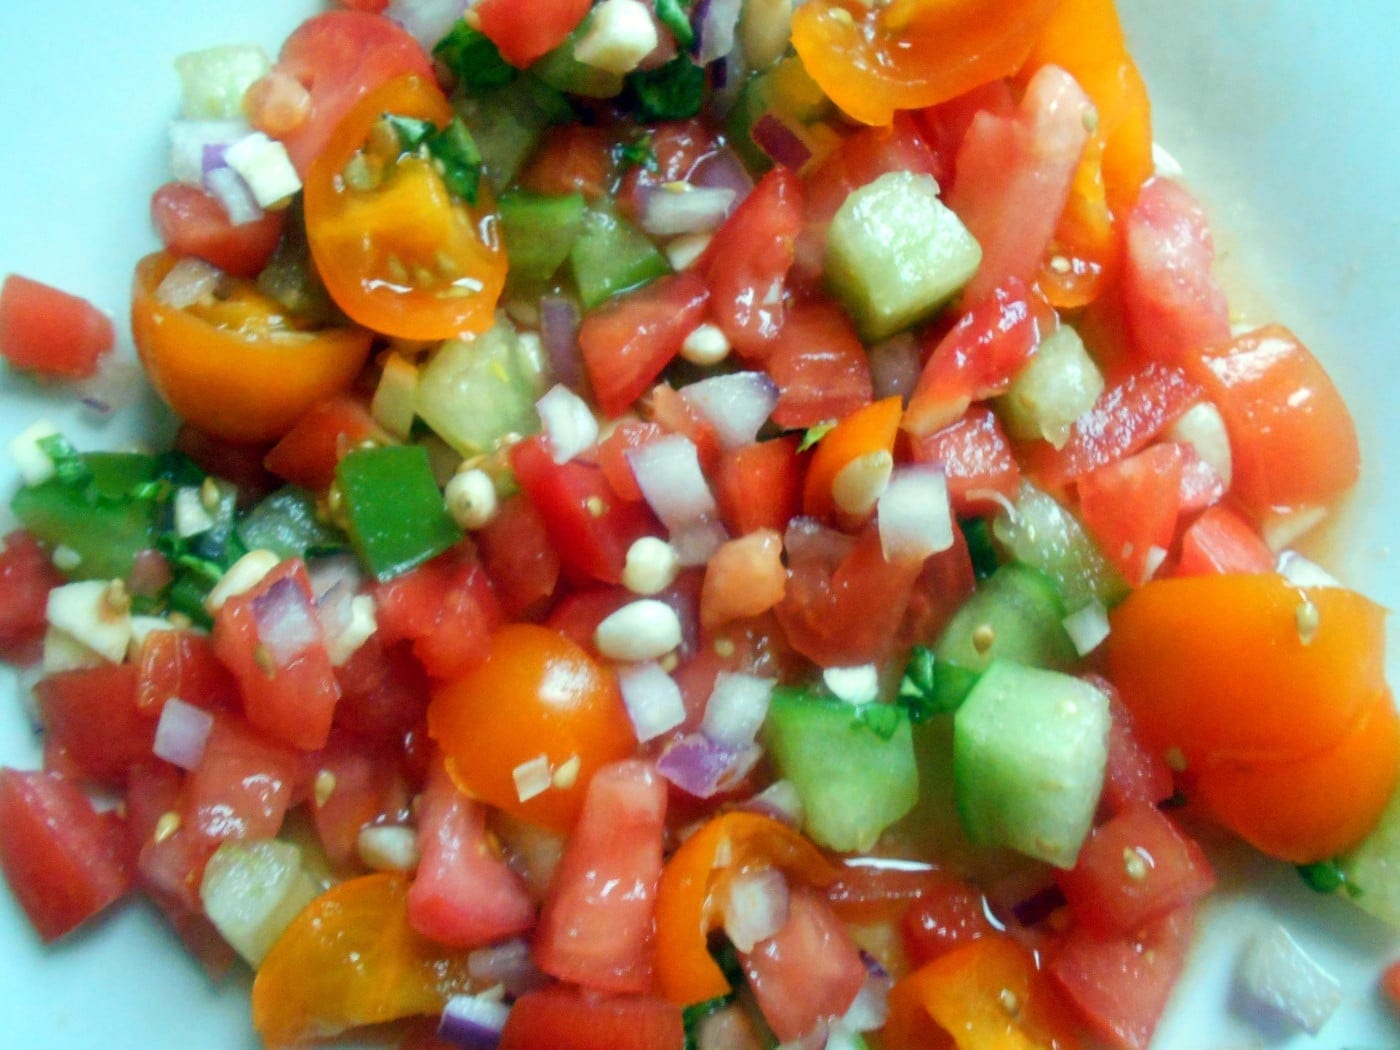 Closeup view of the bruschetta tomatoes